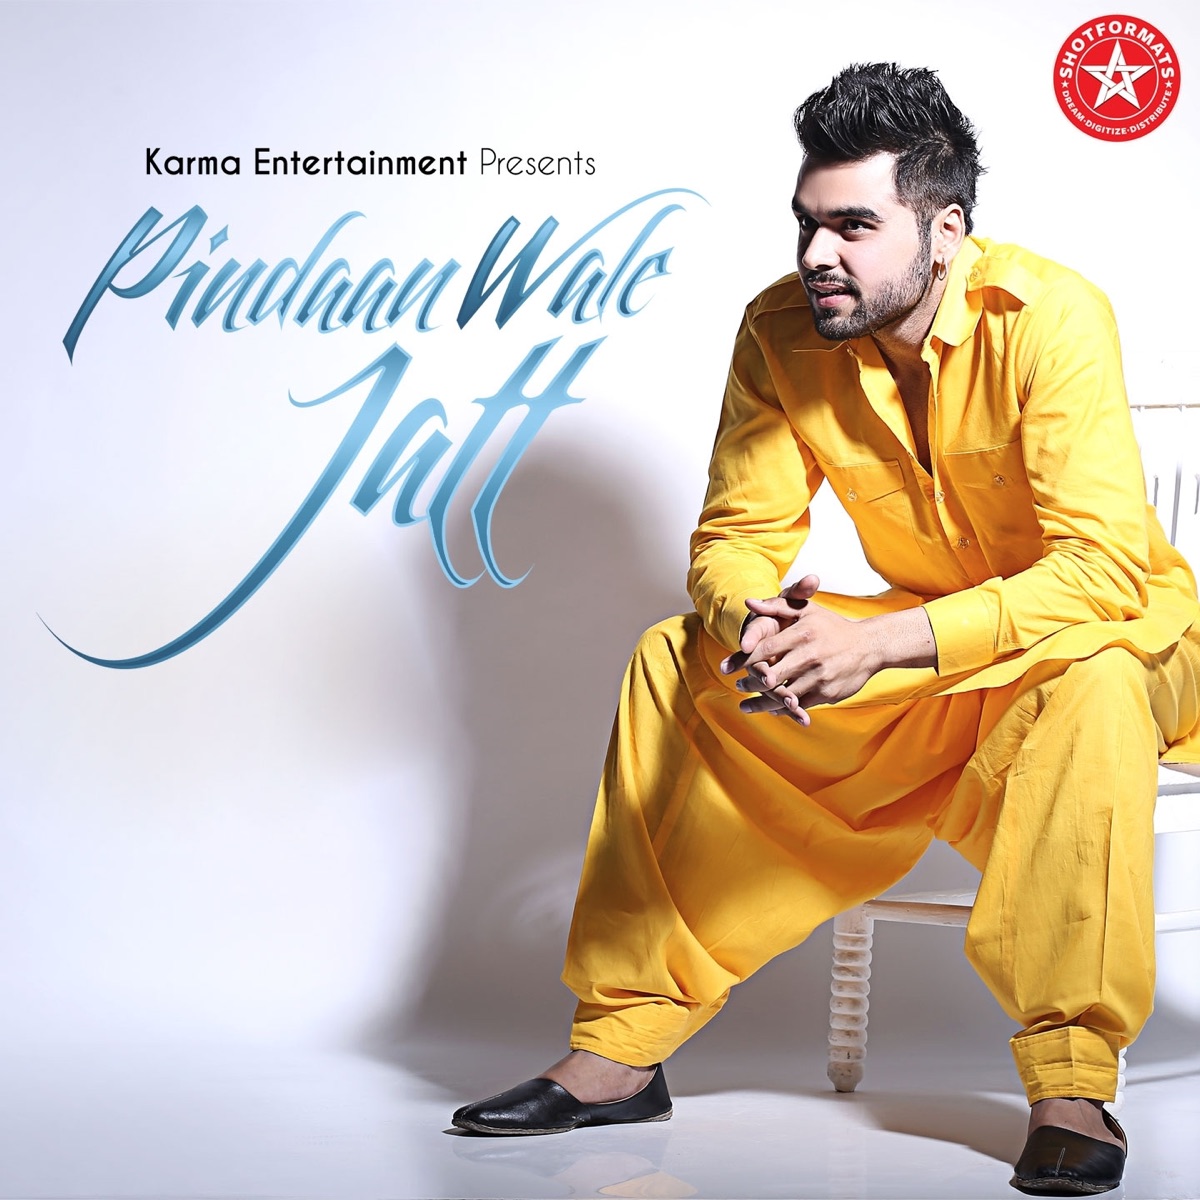 Pindaan Wale Jatt (Ninja) - Single - Album by Ninja - Apple Music